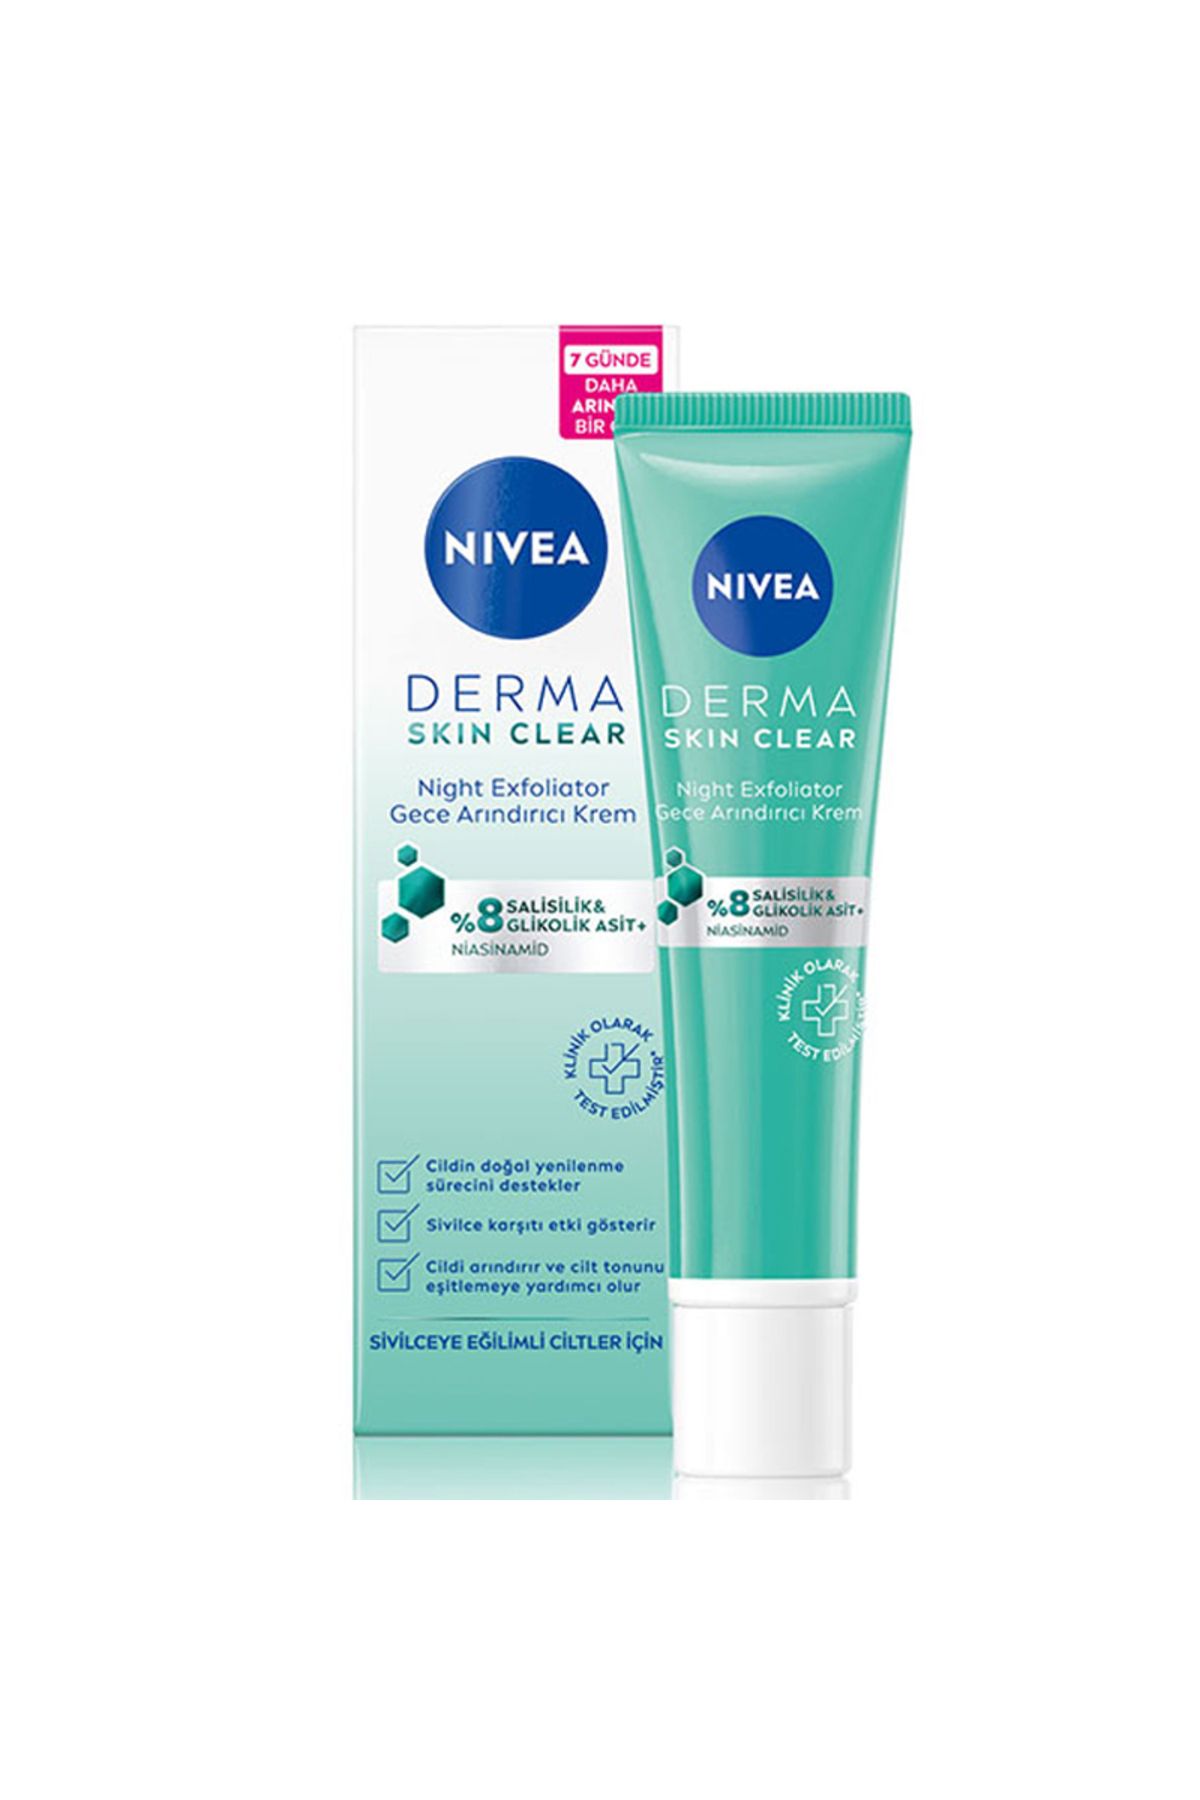 NIVEA Derma Skin Clear Night Exfoliator Gece Arındırıcı Krem 40 ml